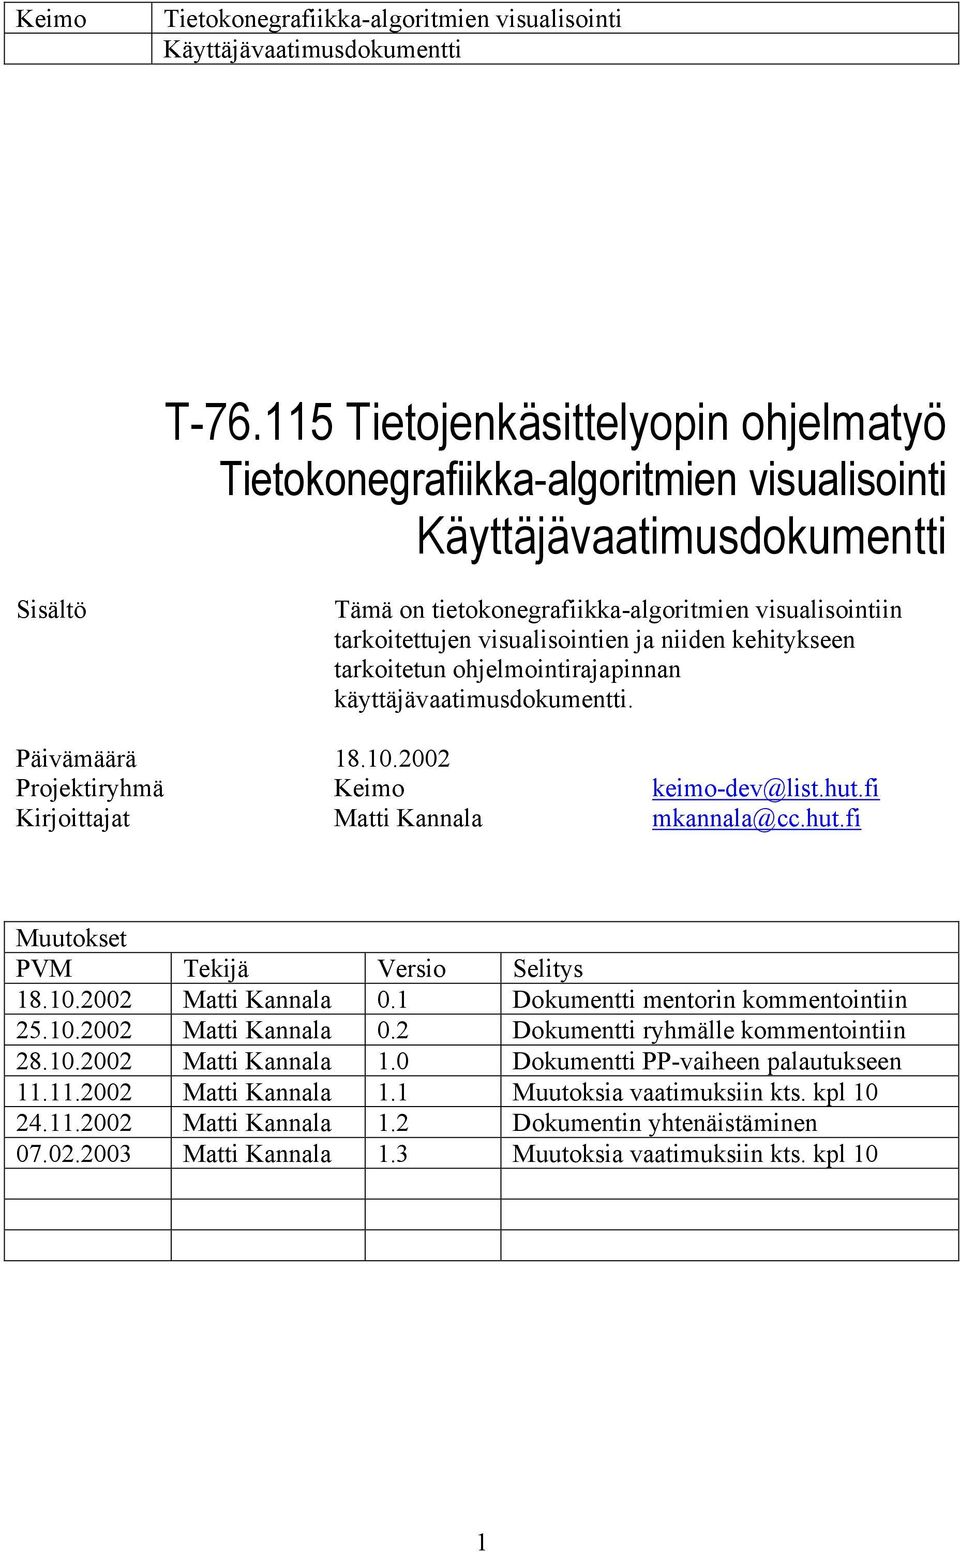 10.2002 Matti Kannala 0.1 Dokumentti mentorin kommentointiin 25.10.2002 Matti Kannala 0.2 Dokumentti ryhmälle kommentointiin 28.10.2002 Matti Kannala 1.